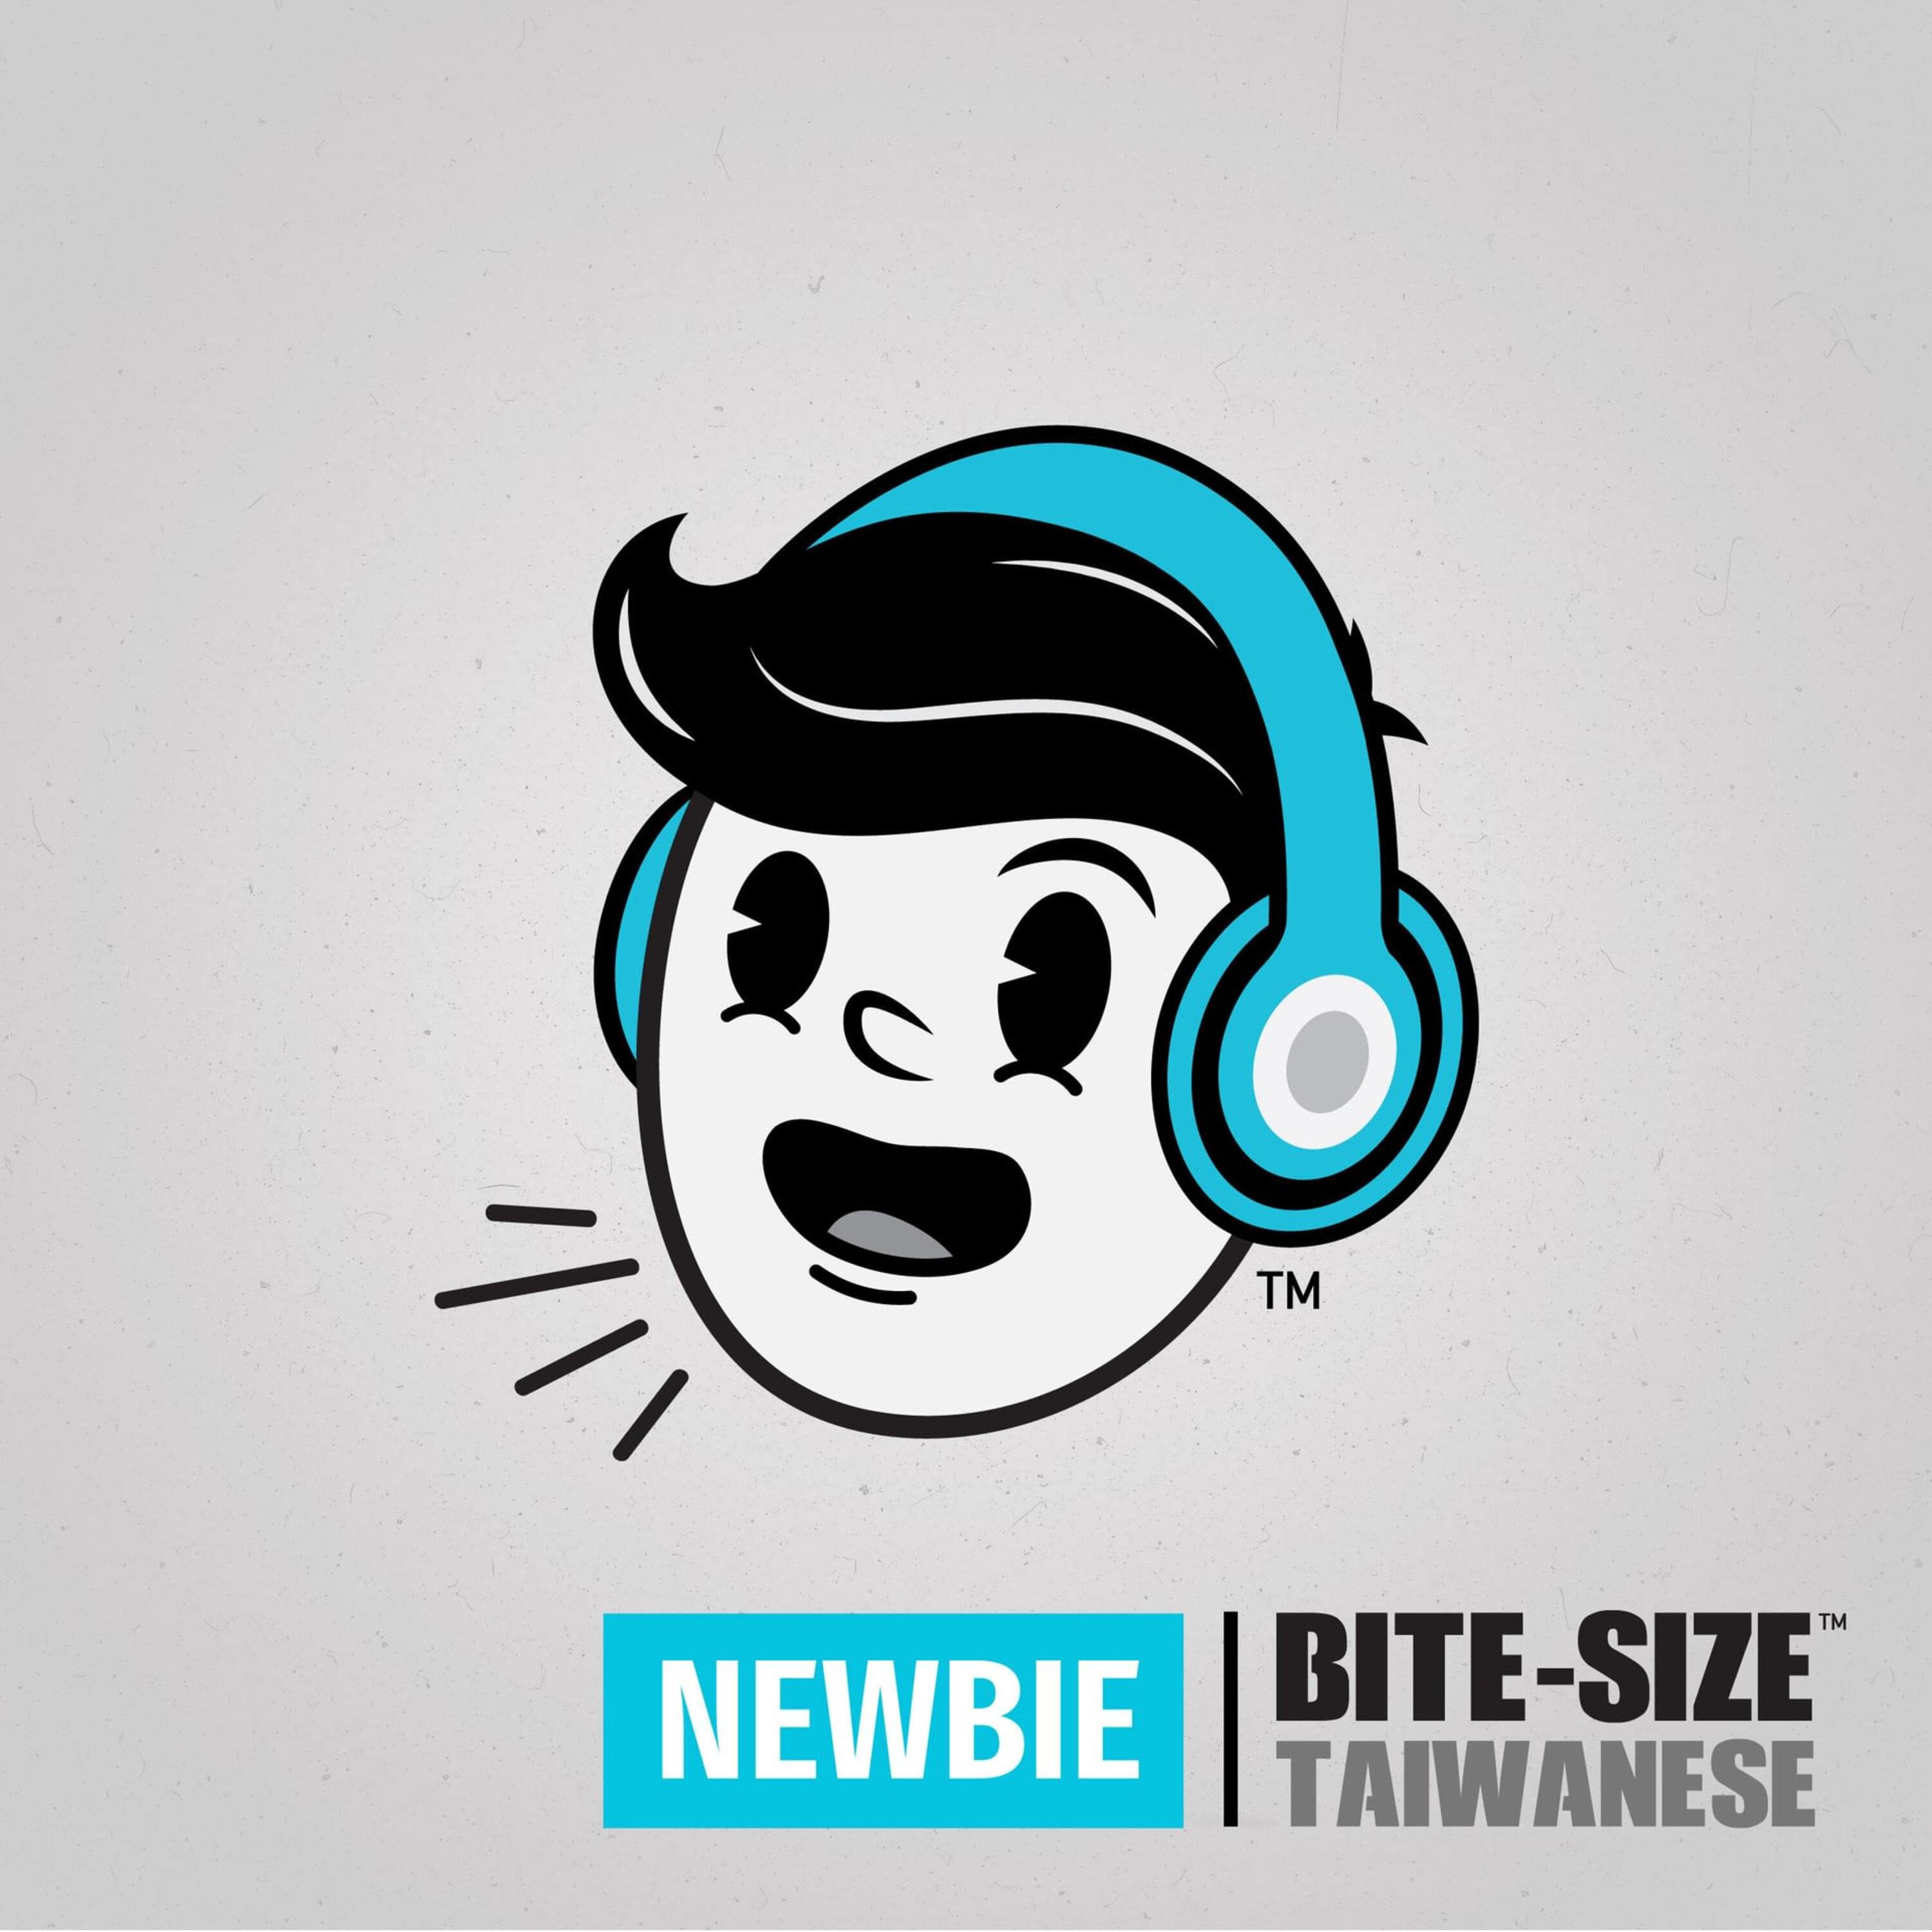 Bite-size Taiwanese | Newbie